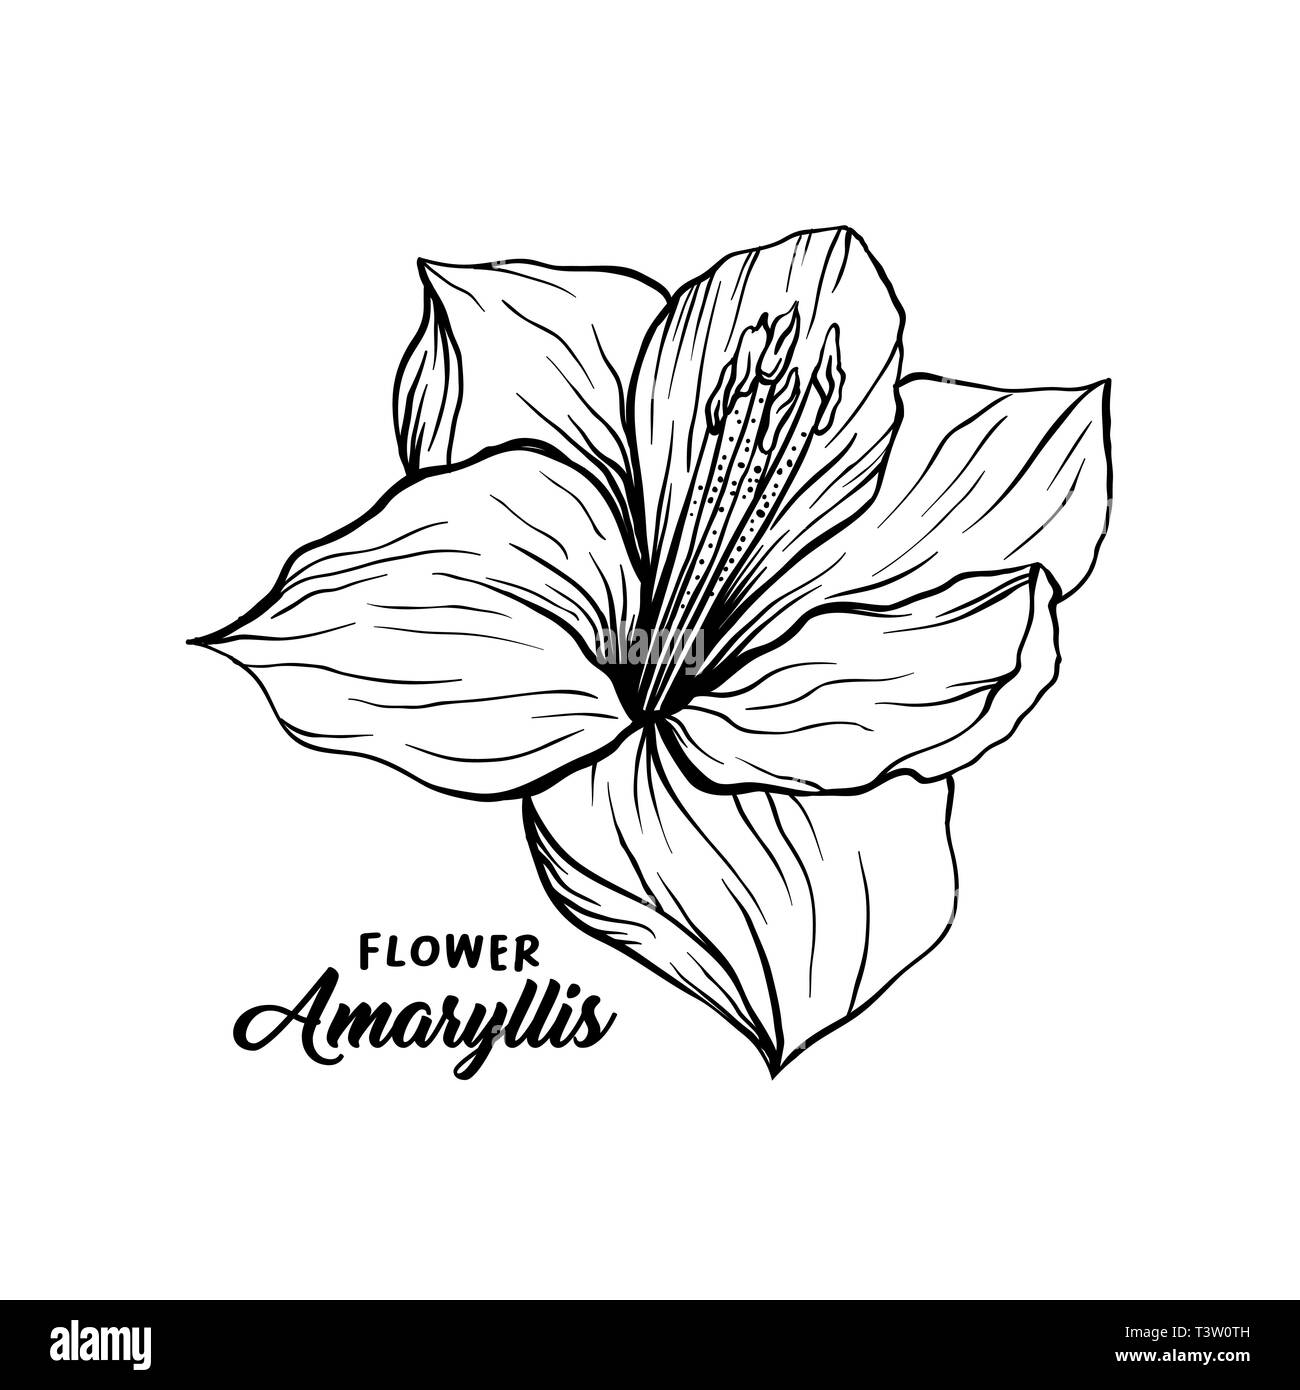 Amaryllis Black and White Stock Photos & Images - Alamy